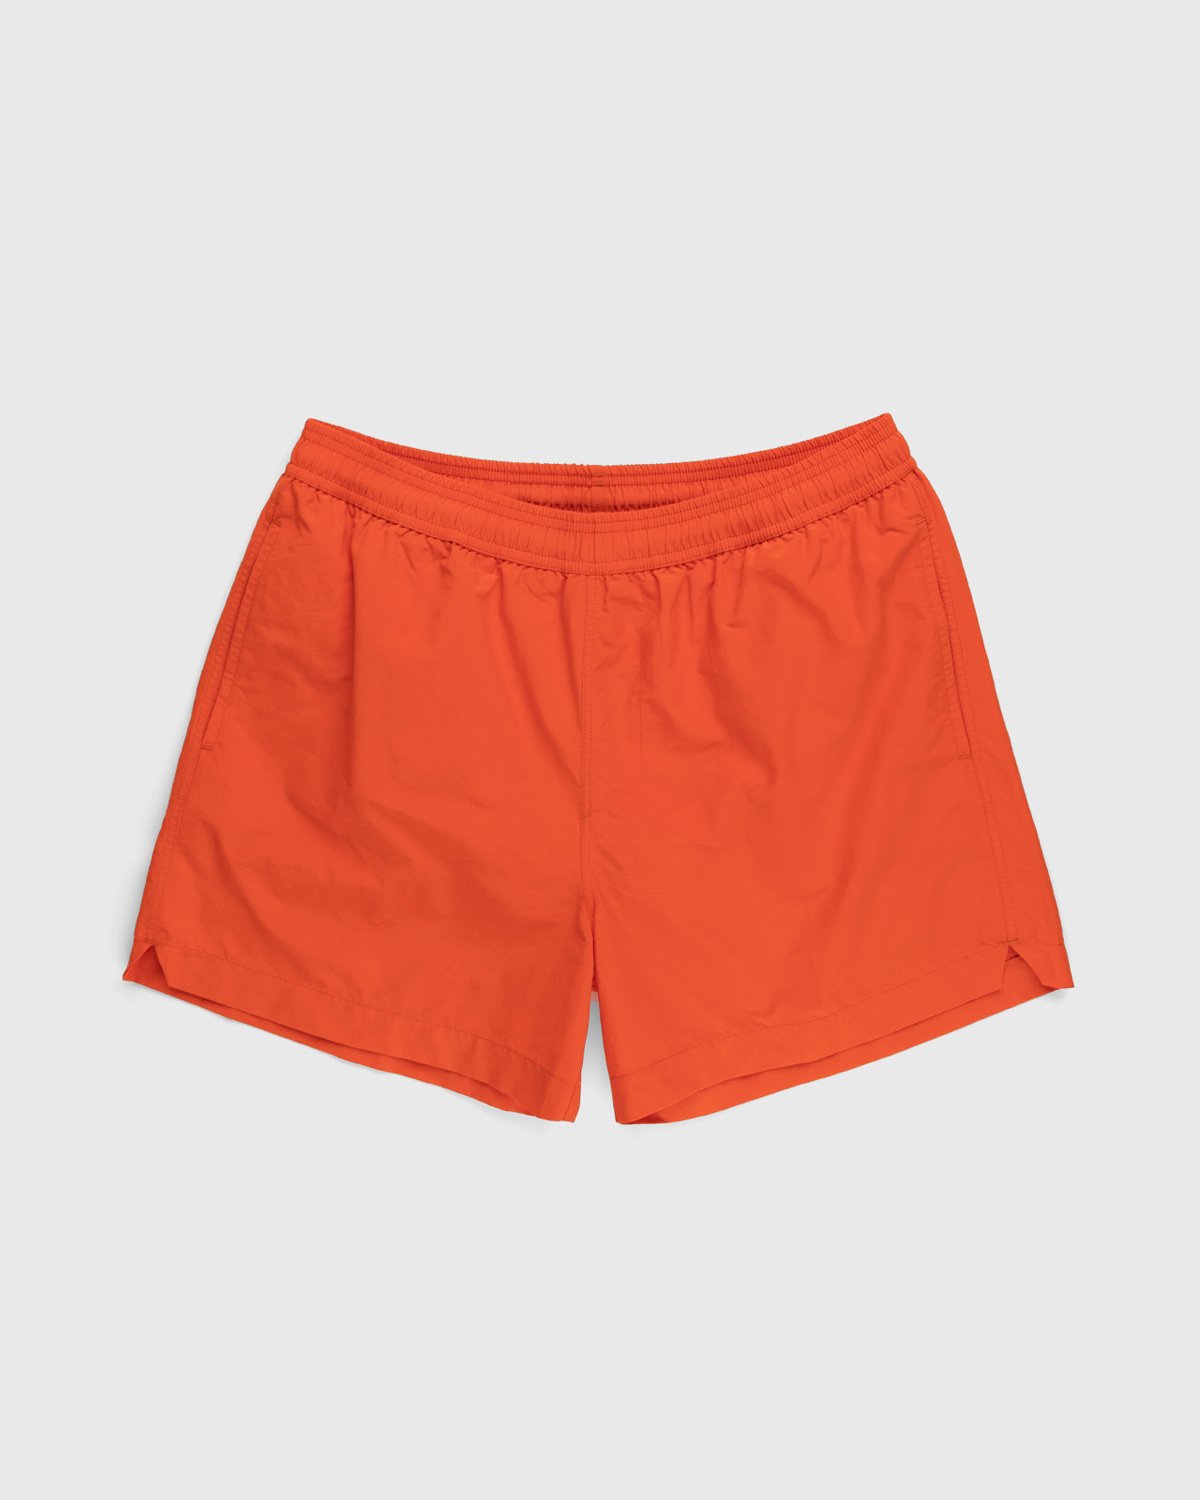 A-Cold-Wall* - Natant Nylon Short Rich Orange - Clothing - Orange - Image 1